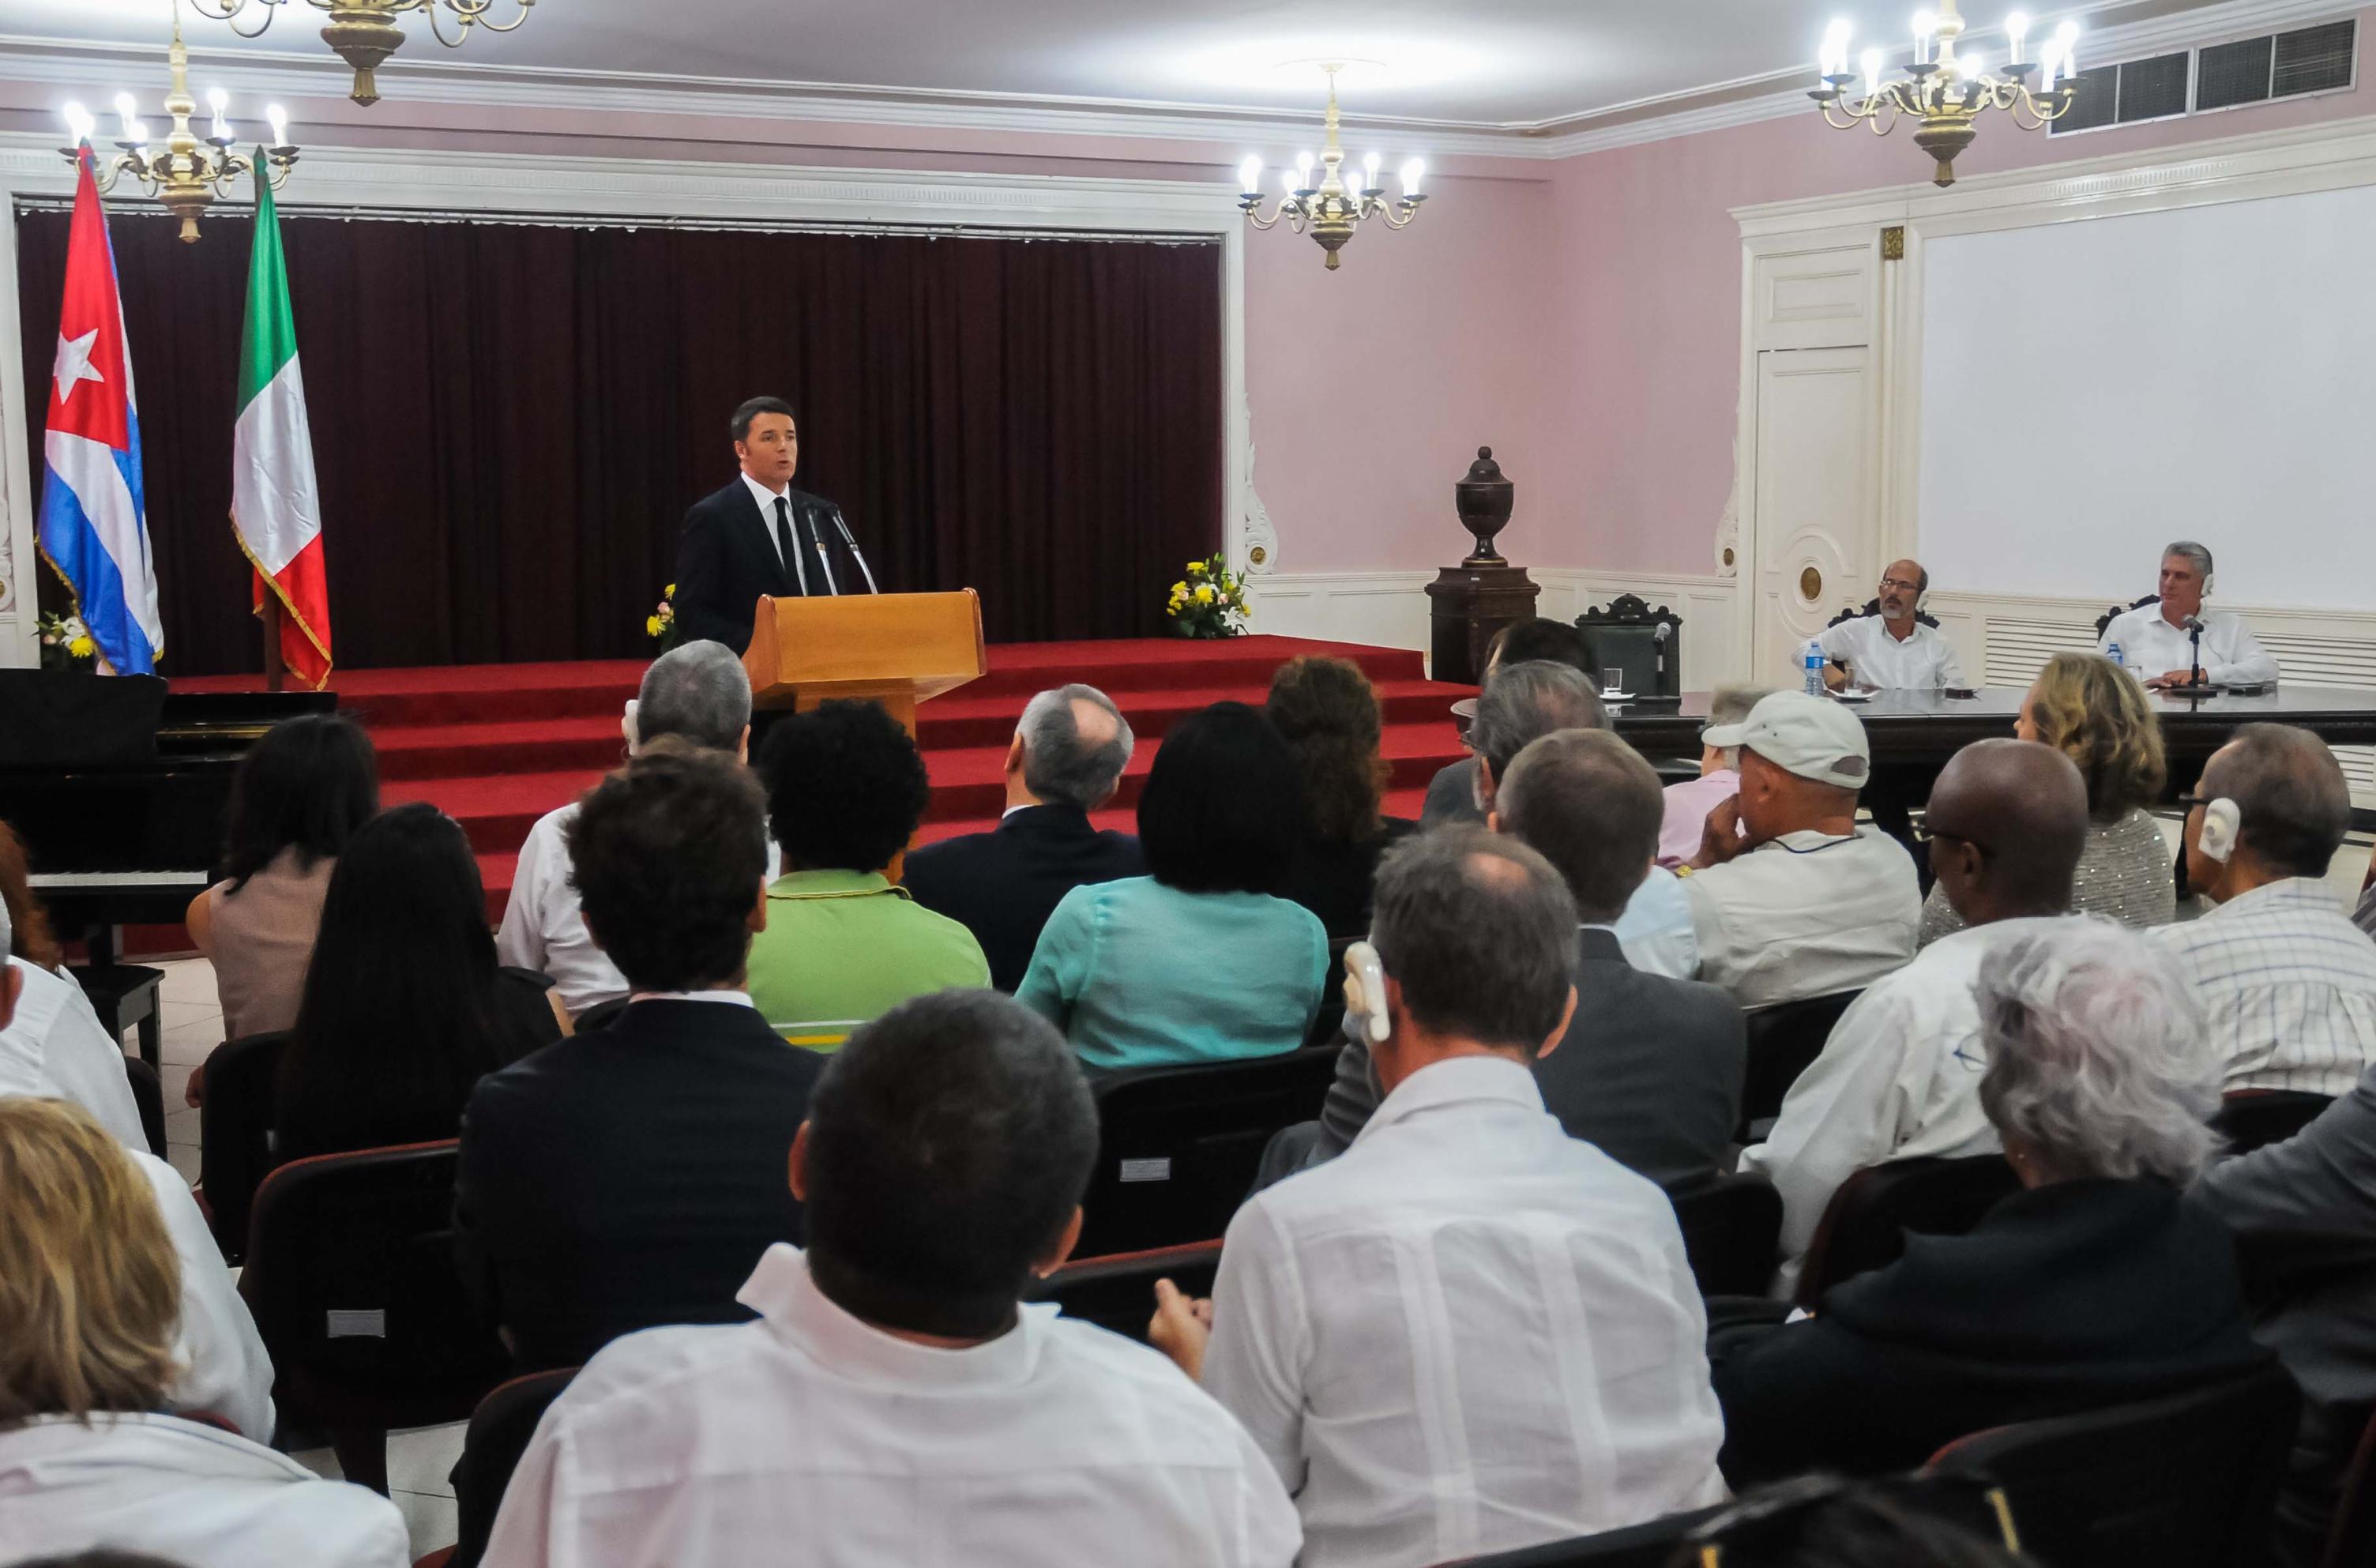 Matteo Renzi durante su intervención en la conferencia realizada en el ISA, en La Habana. (Foto: Abel Padrón/AIN)